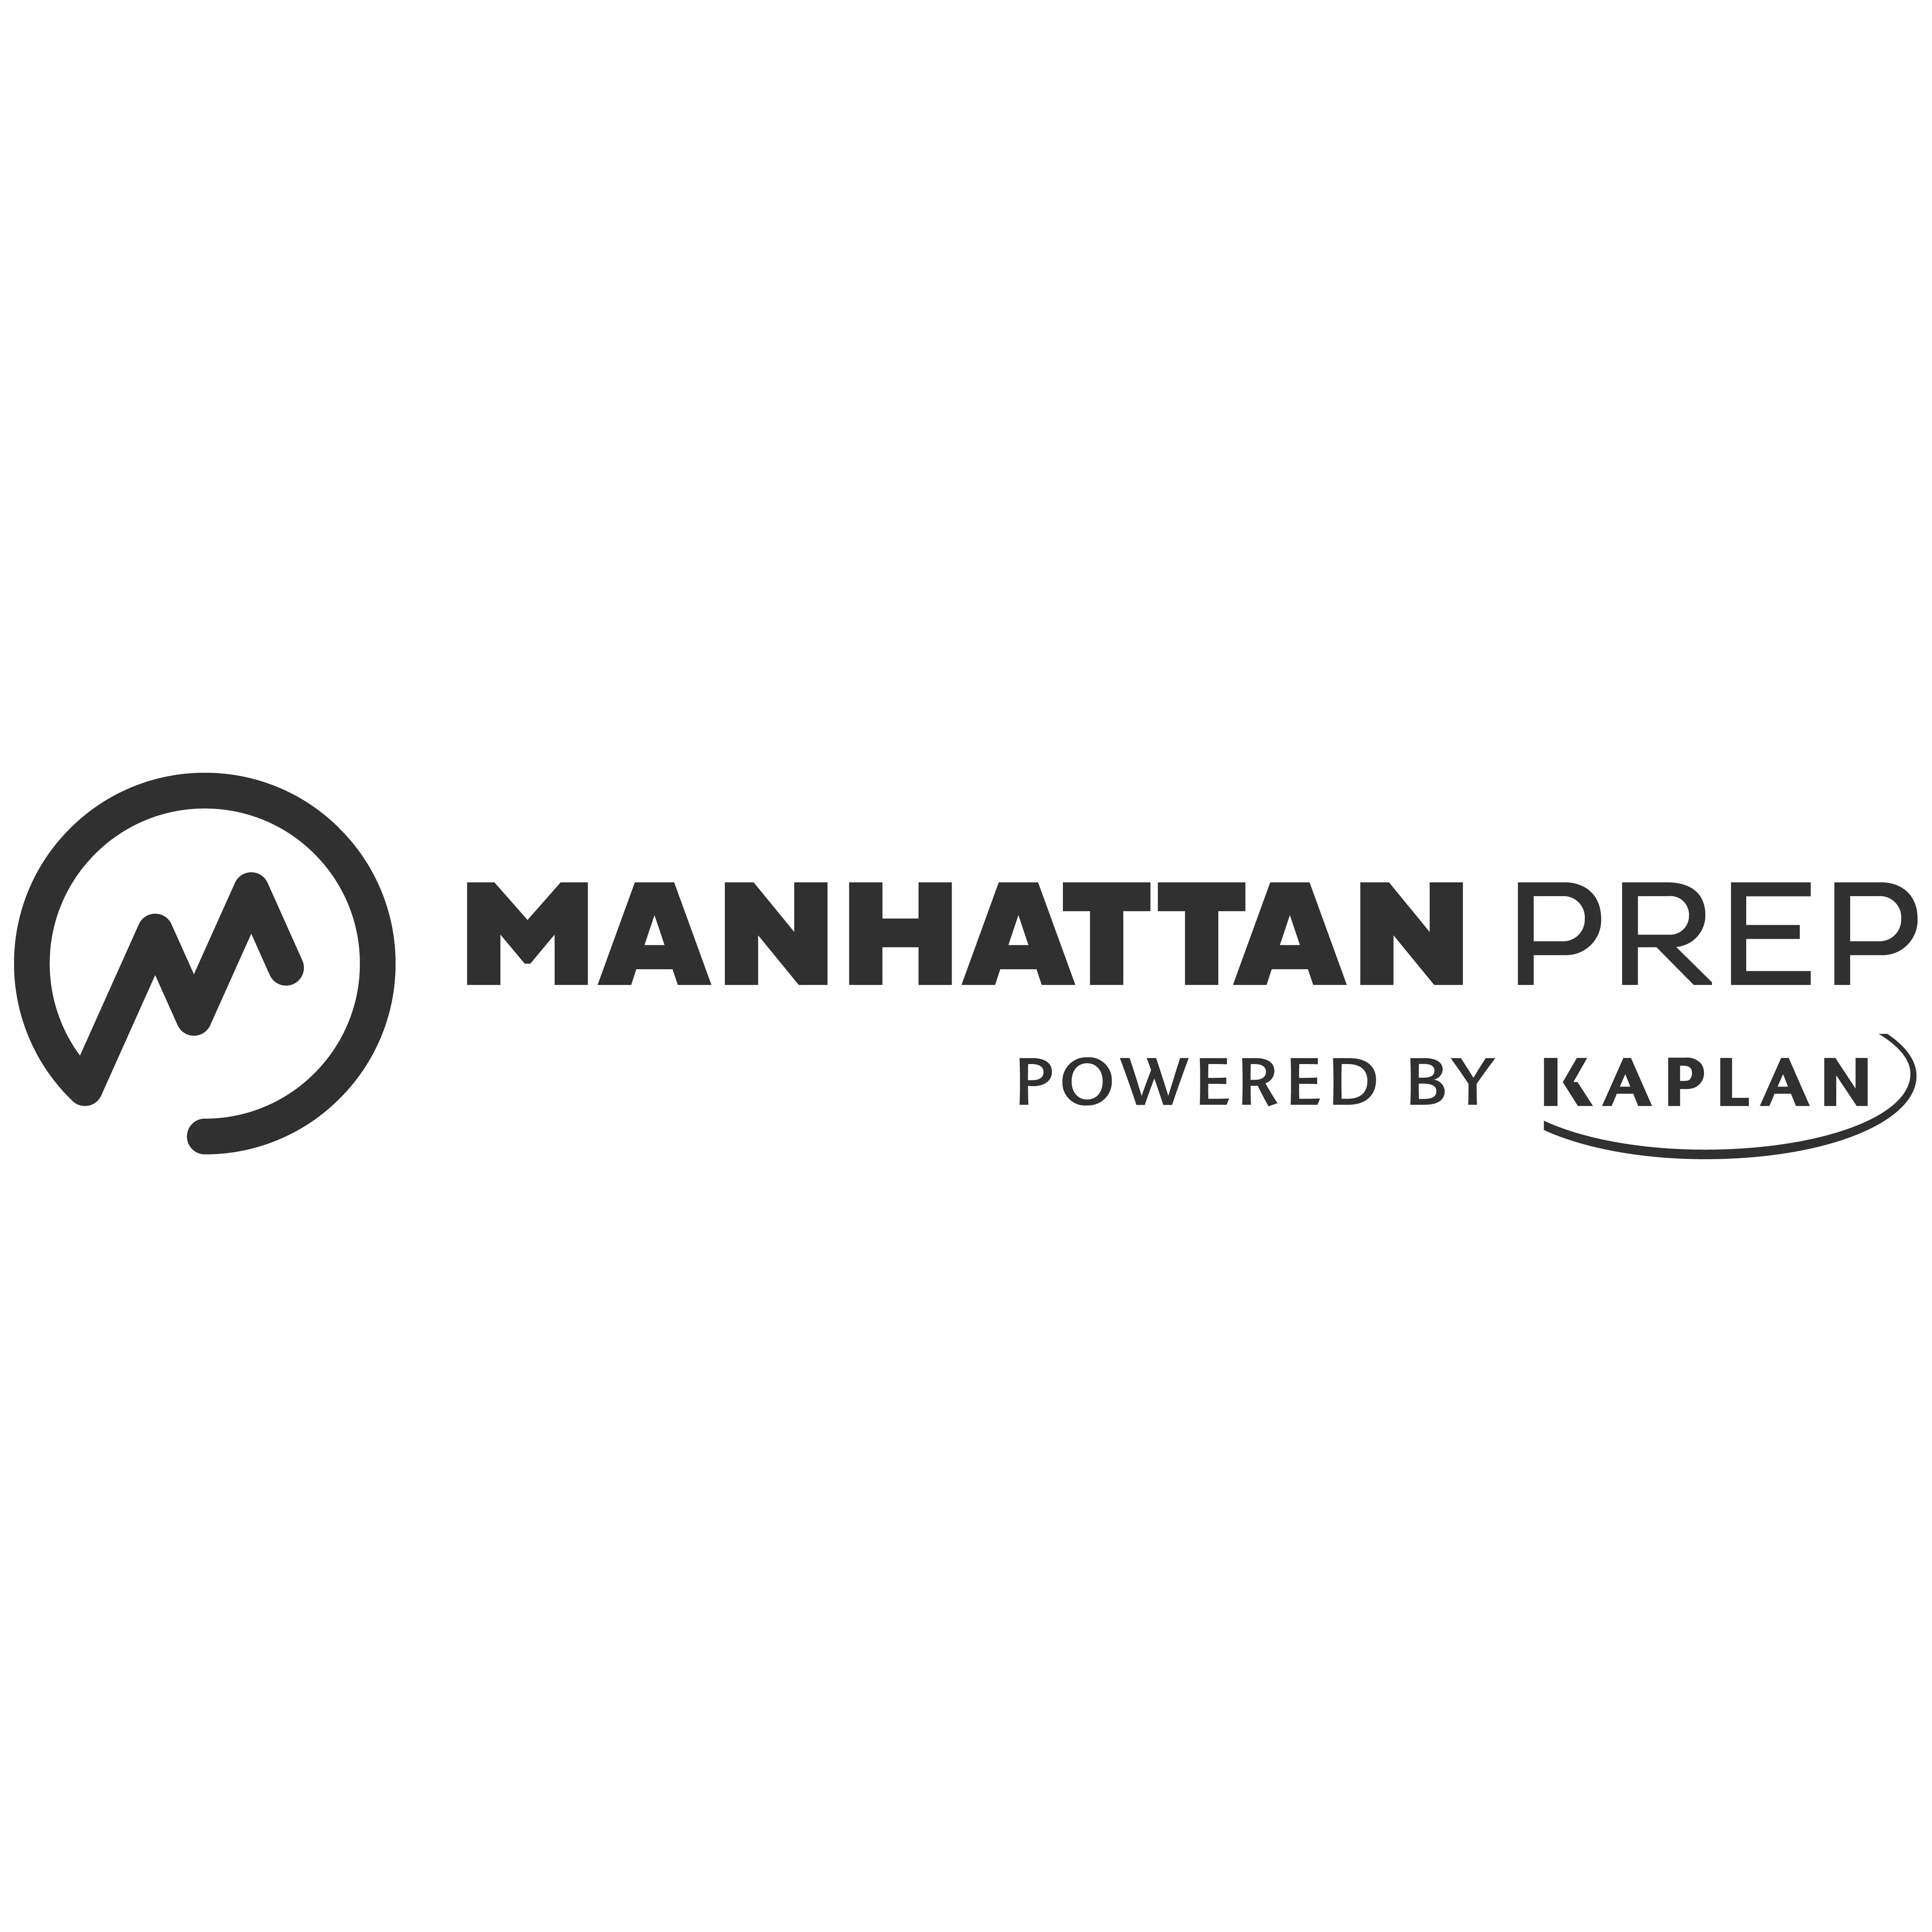 Manhattan Prep: 20% OFF Your GRE Exam Prep